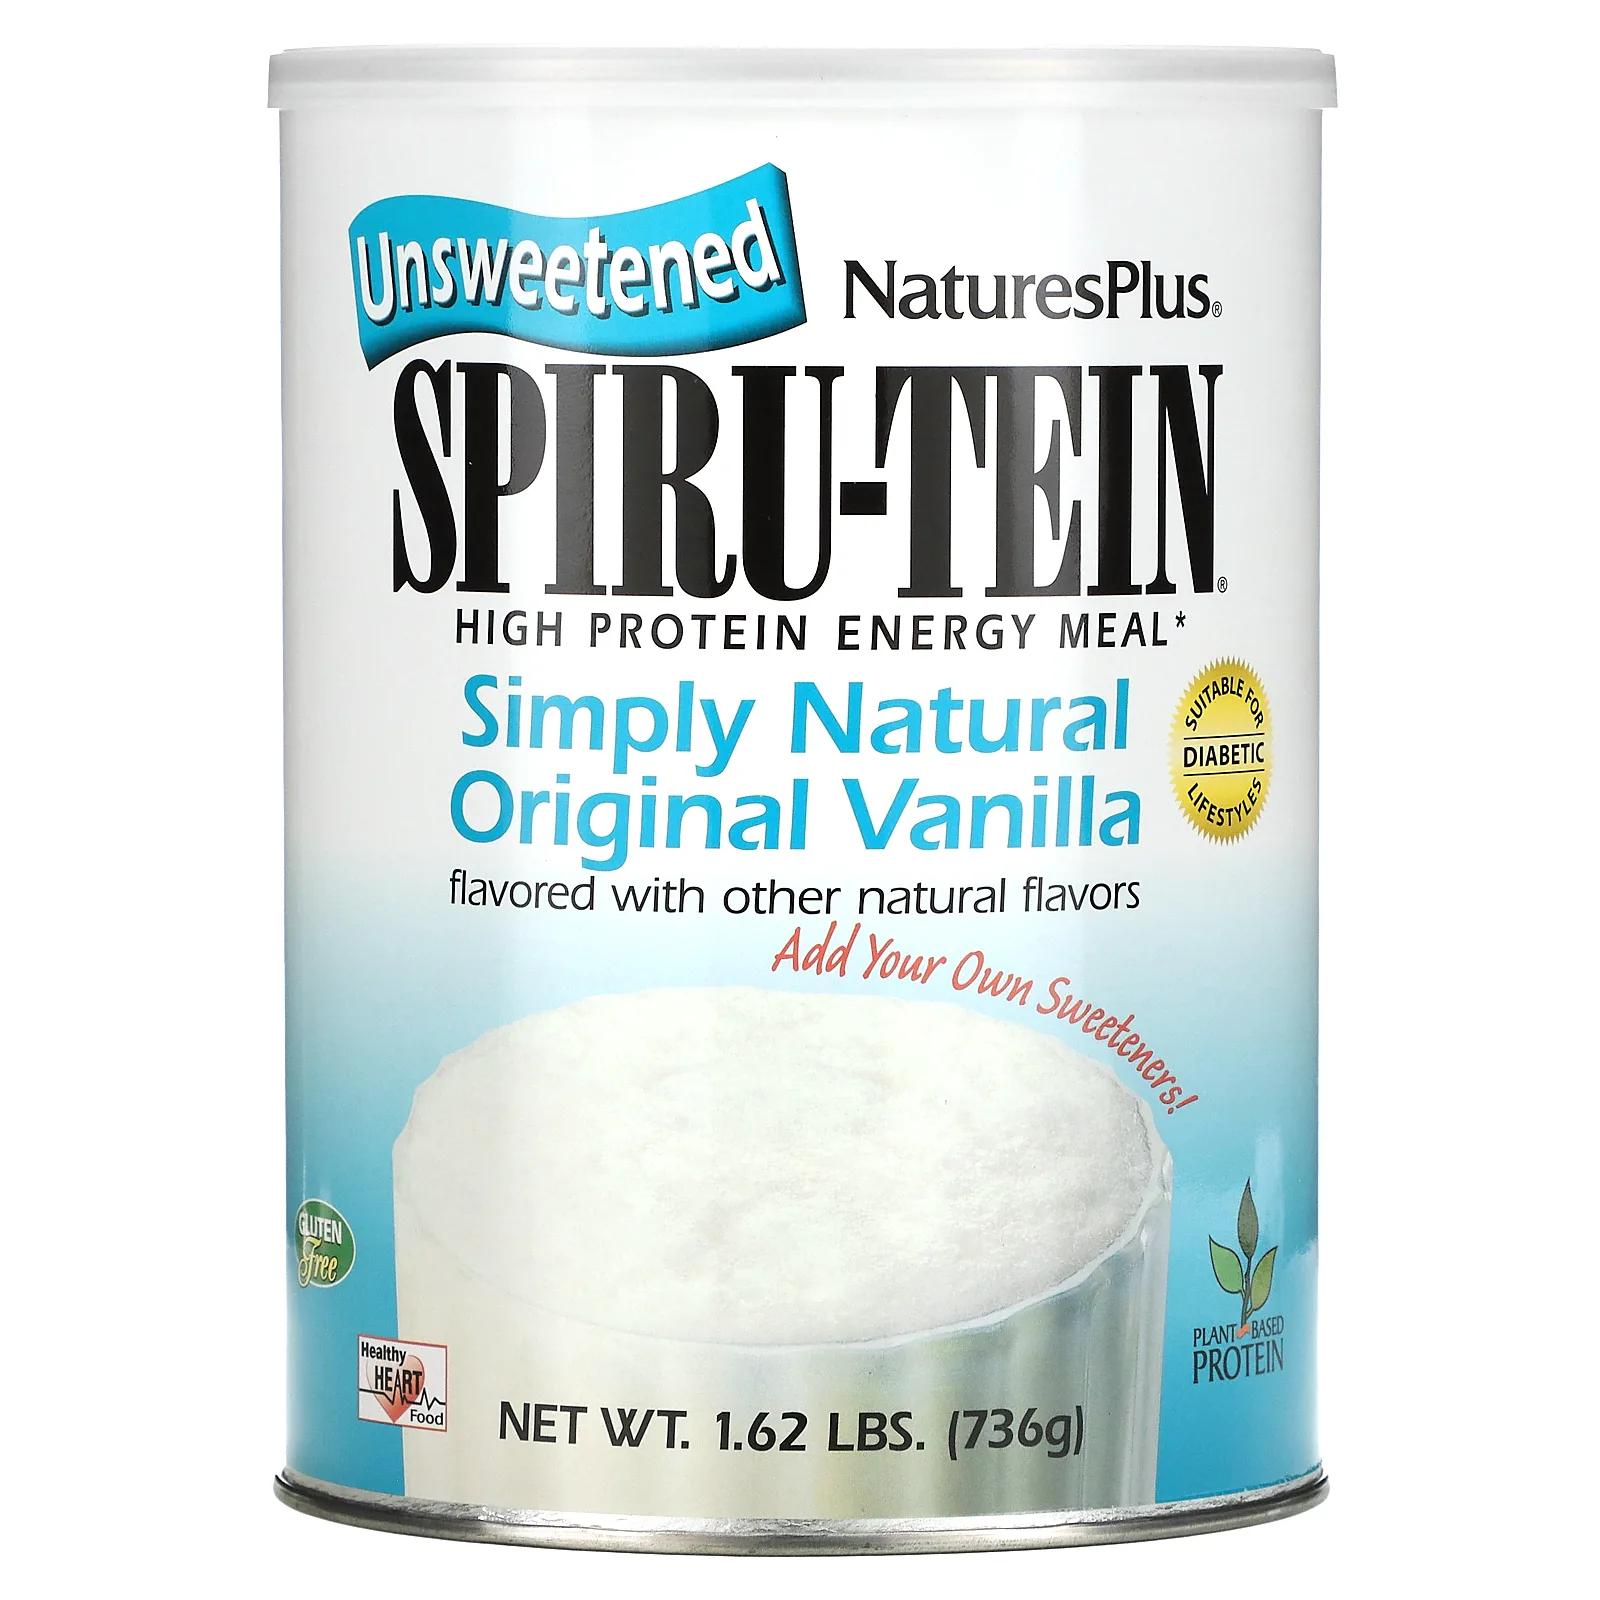 Nature's Plus Сыворотка Spiru-Tein питание с высоким содержанием белка со вкусом простой настоящей ванили несладкая 740 г